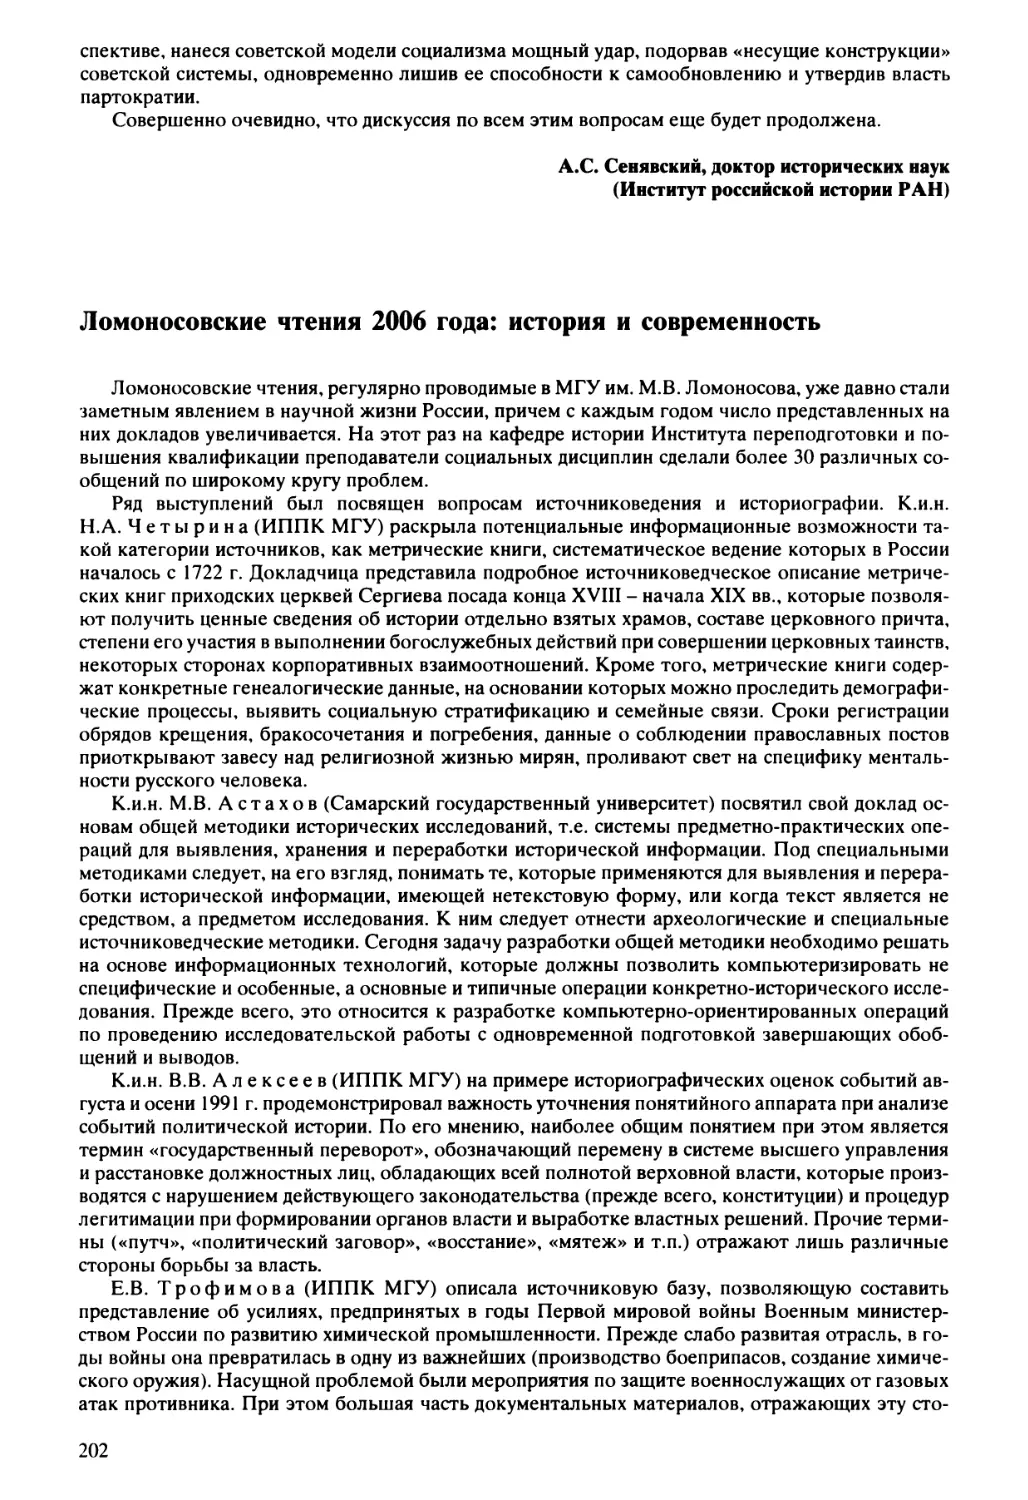 Алексеев  В.В.  -  Ломоносовские  чтения  2006  года:  история  и  современность